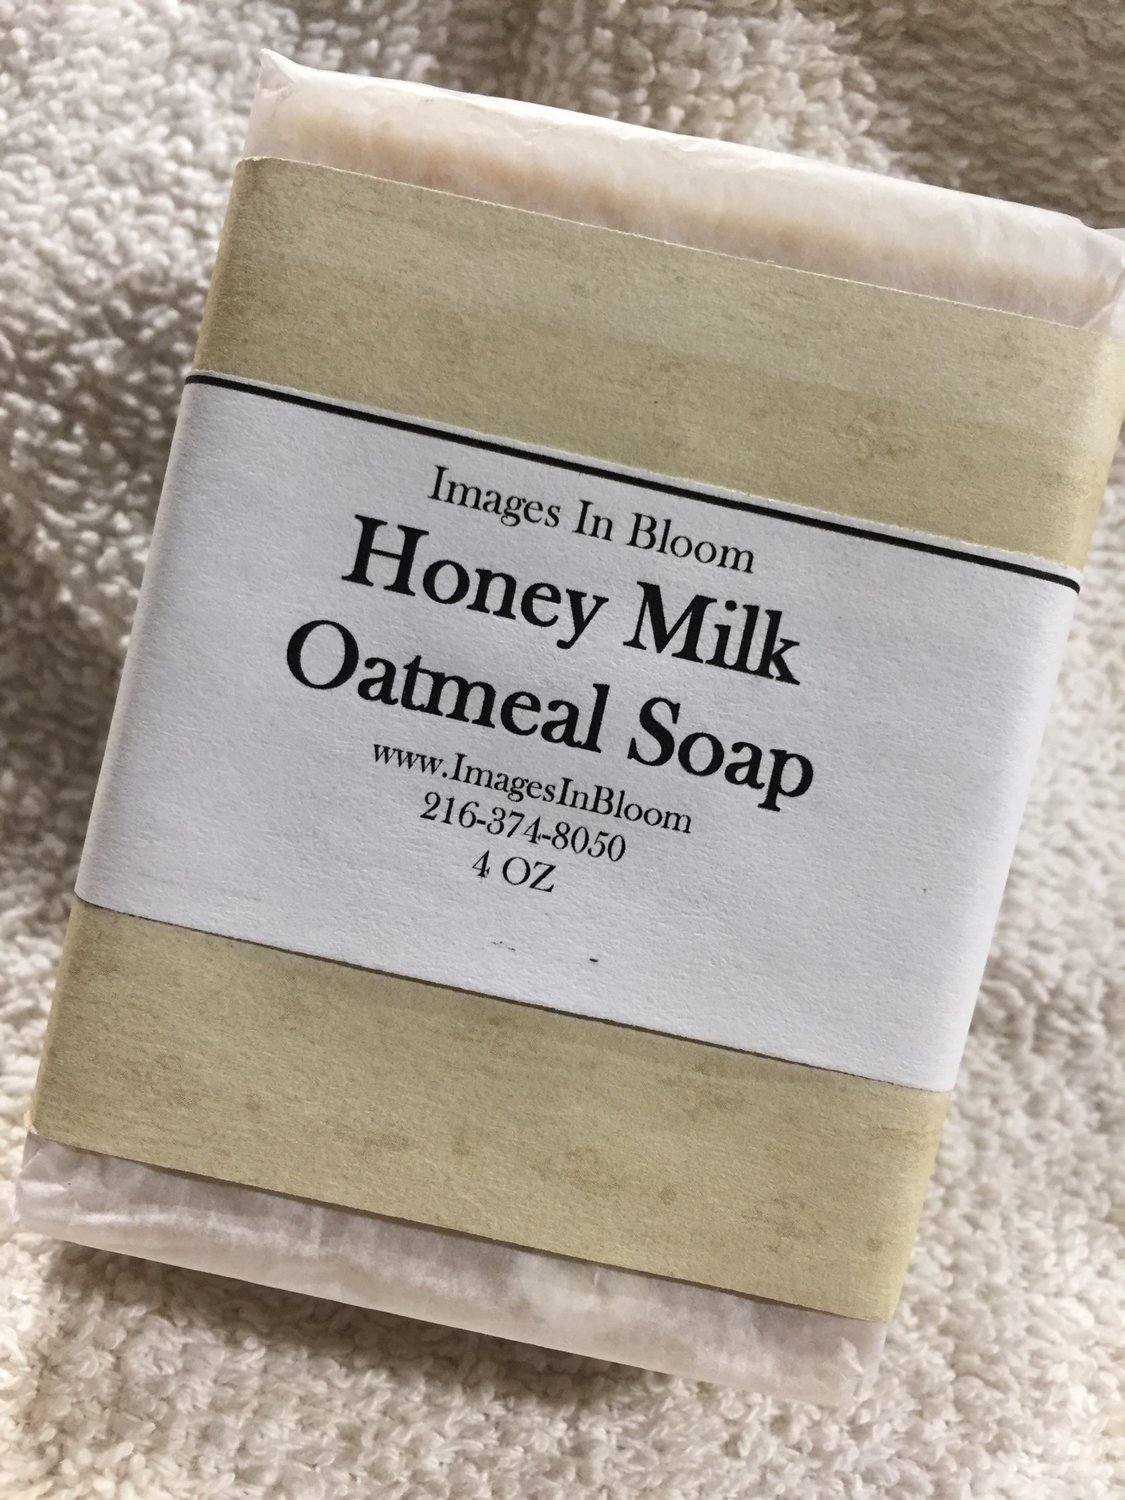 Honey Milk Oatmeal Castille Soap - very gentle on skin